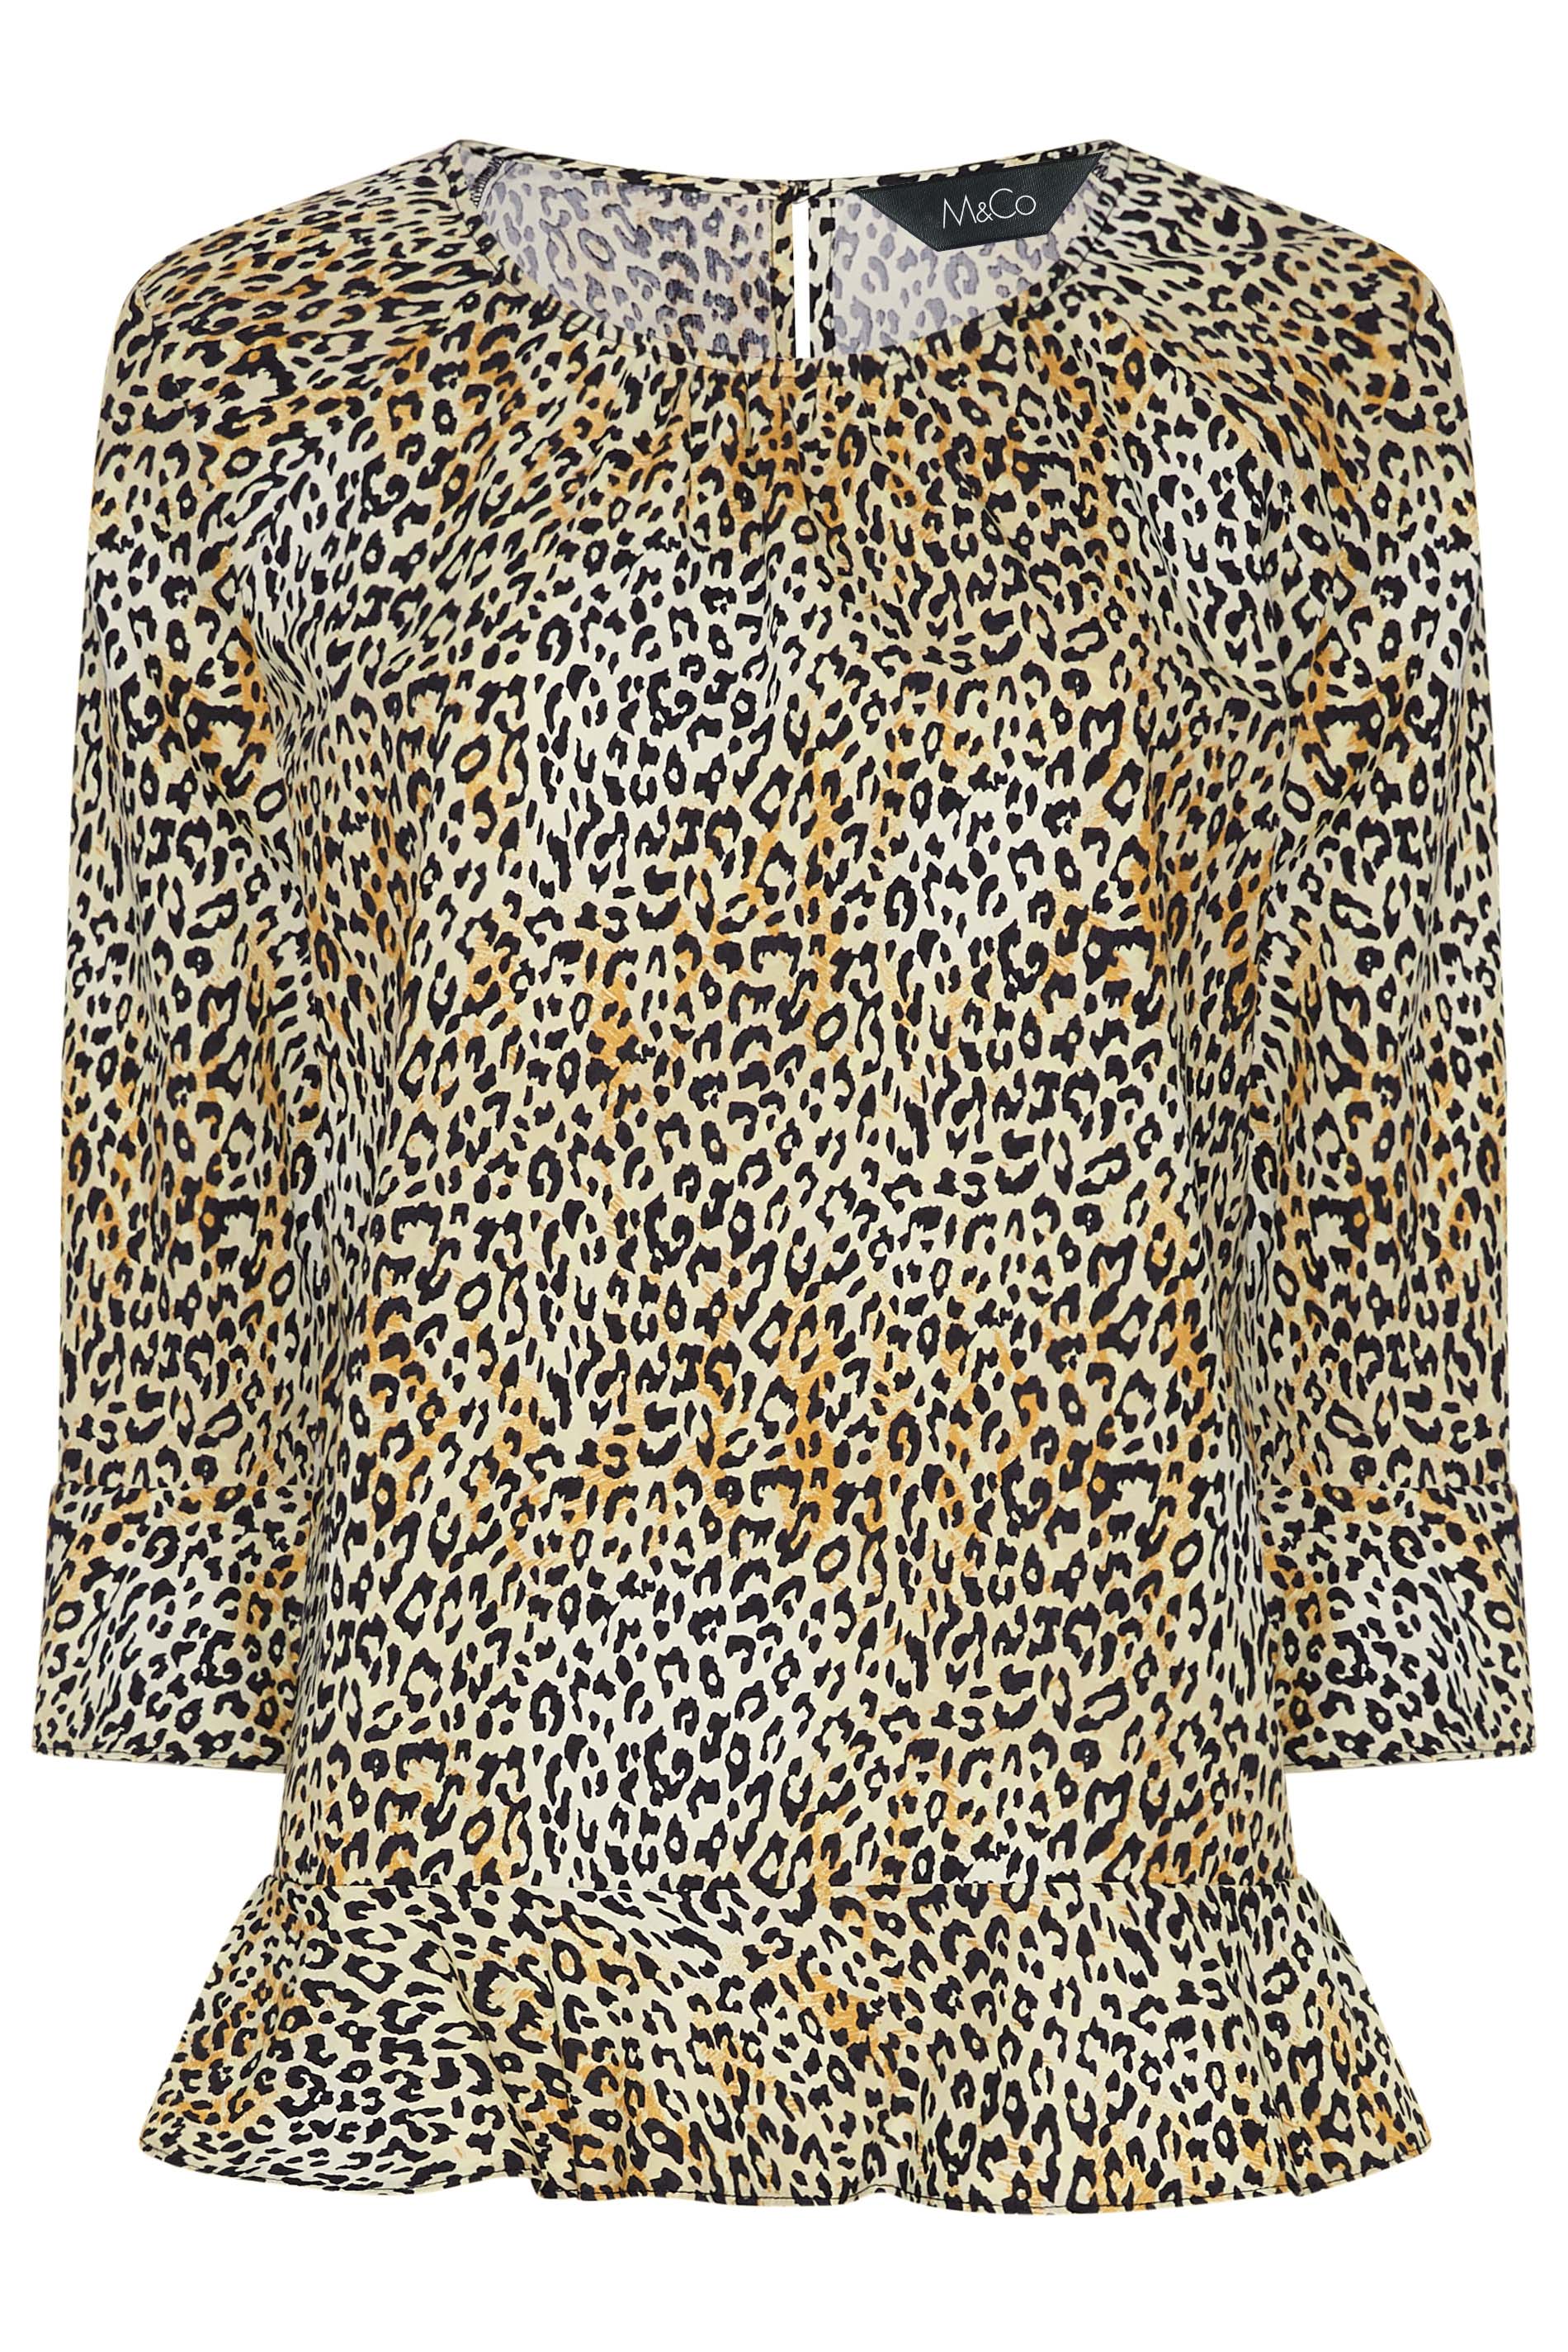 M&Co Brown Leopard Print Frill Hem Cotton Top | M&Co 2